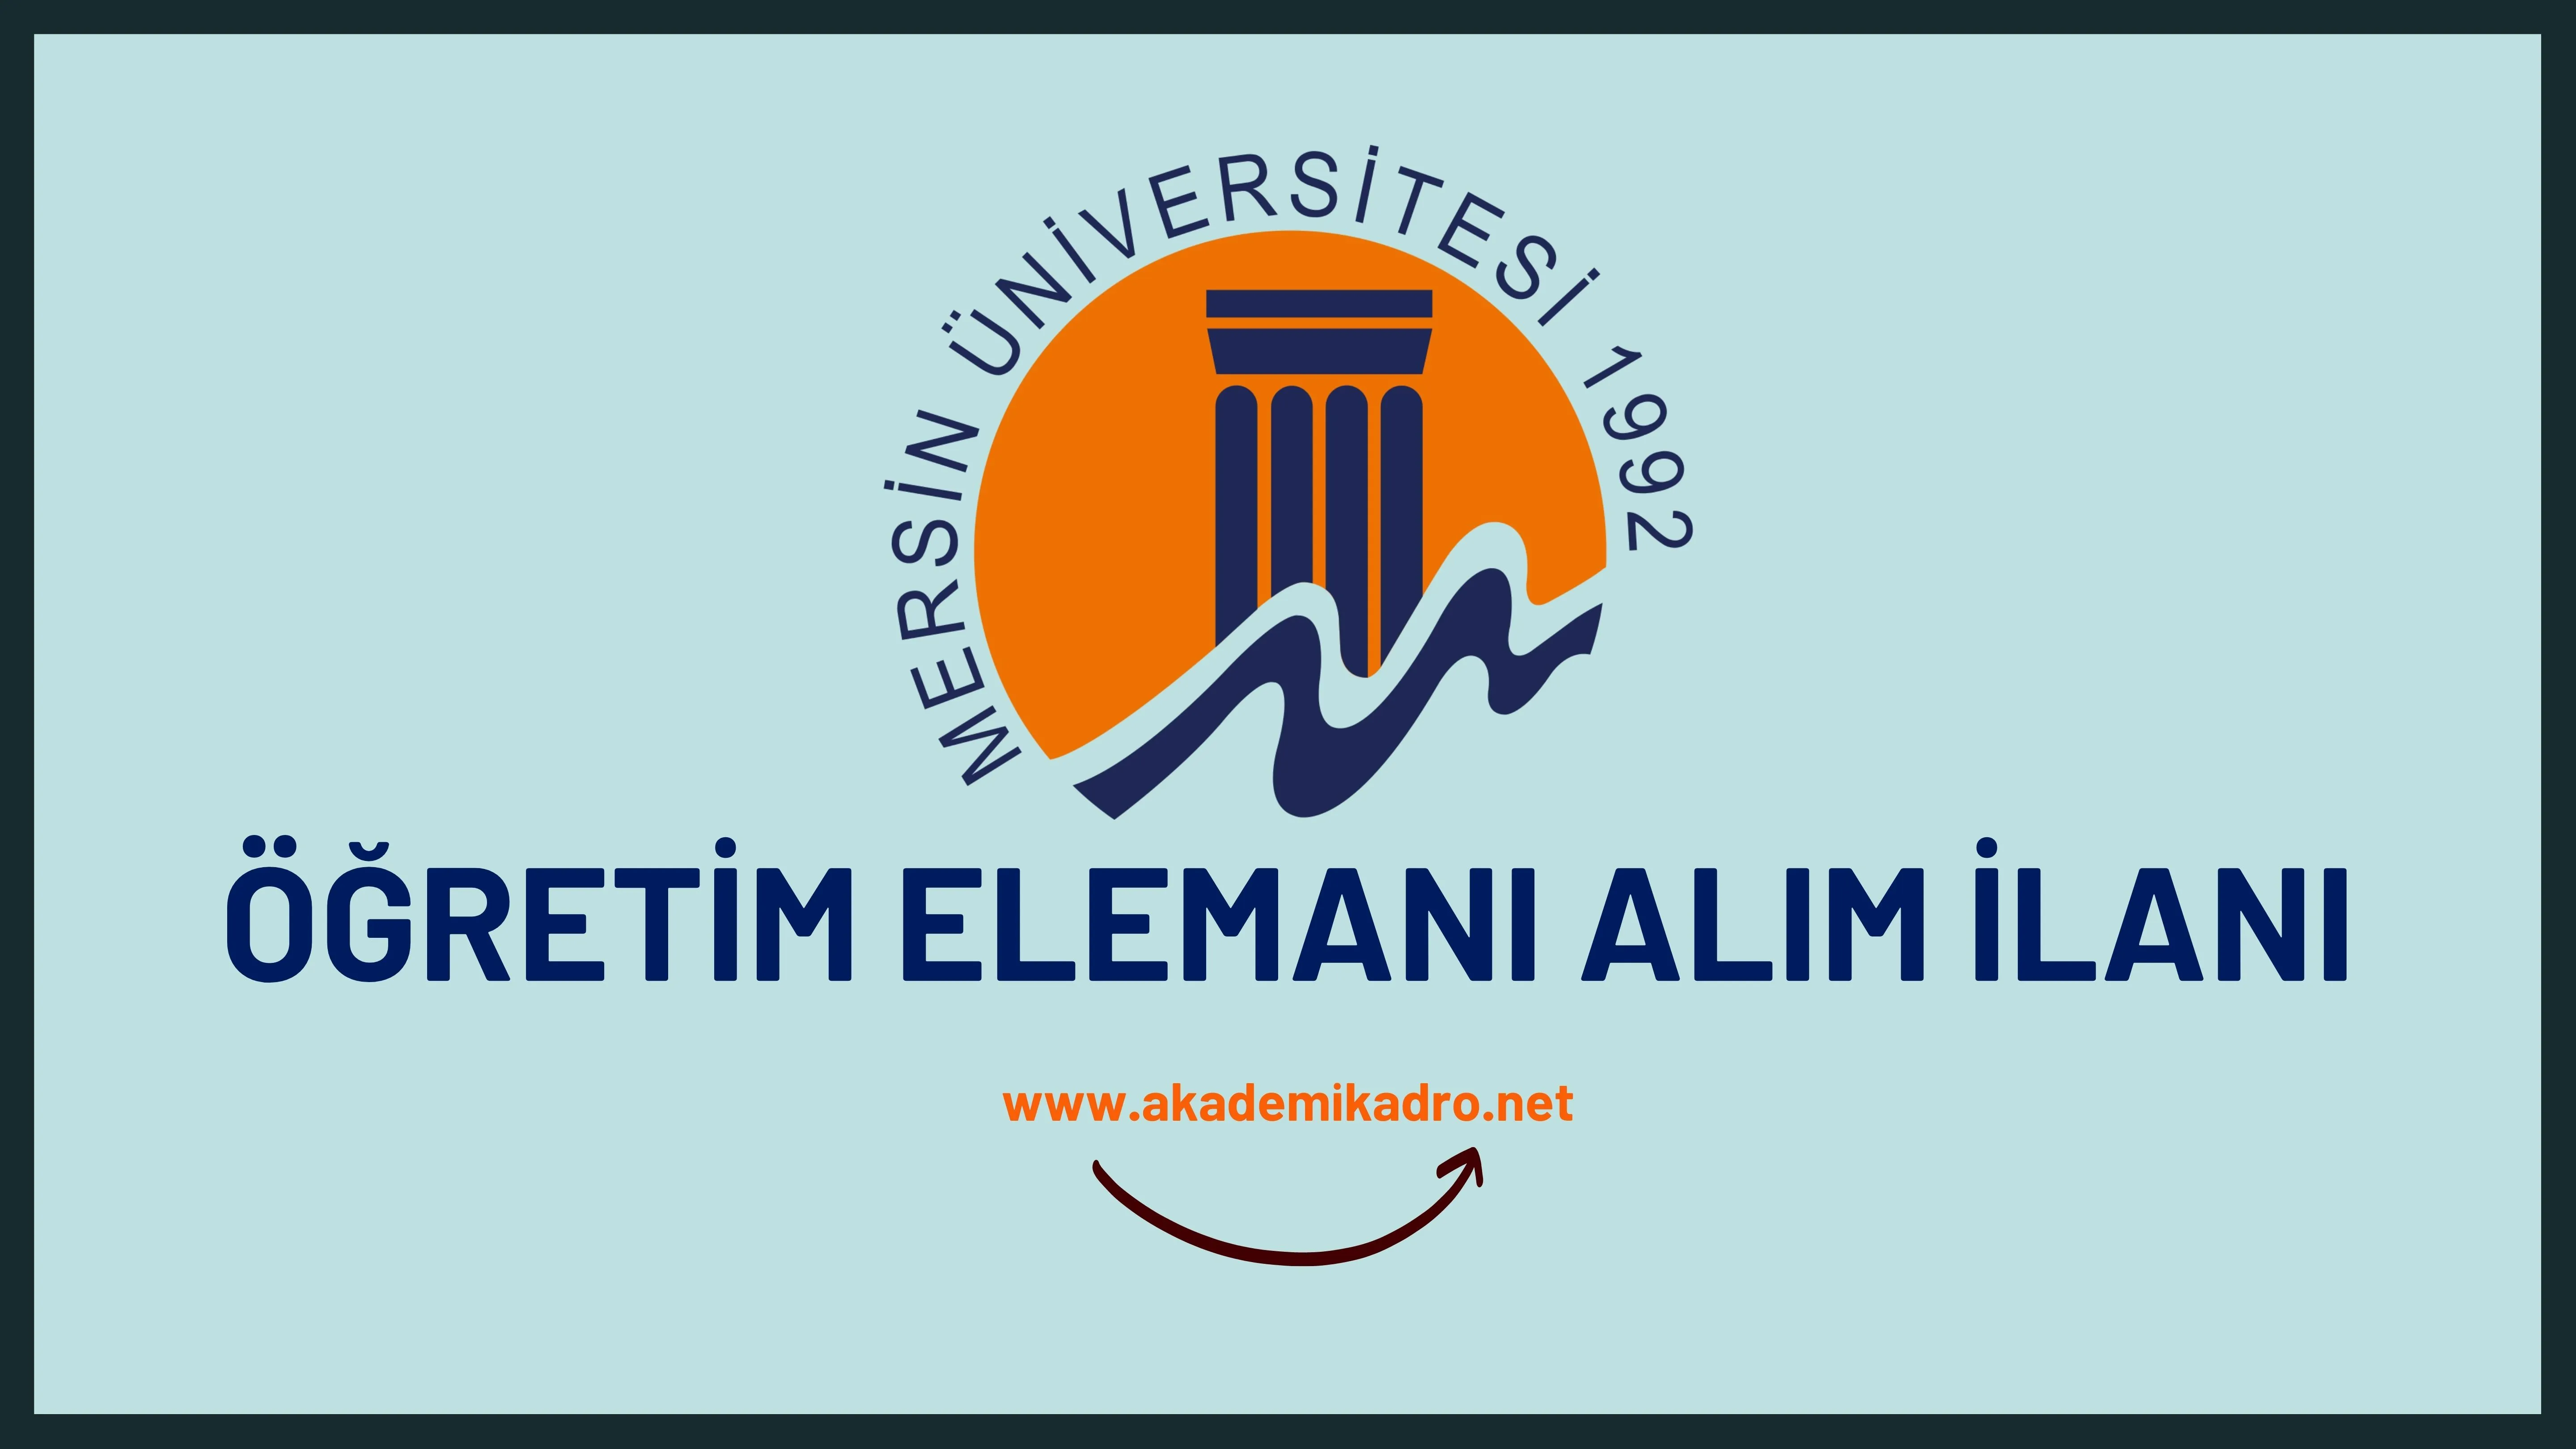 Mersin Üniversitesi 5 Araştırma görevlisi, 4 Öğretim görevlisi ve 29 Öğretim üyesi olmak üzere 38 Öğretim elemanı alacak.